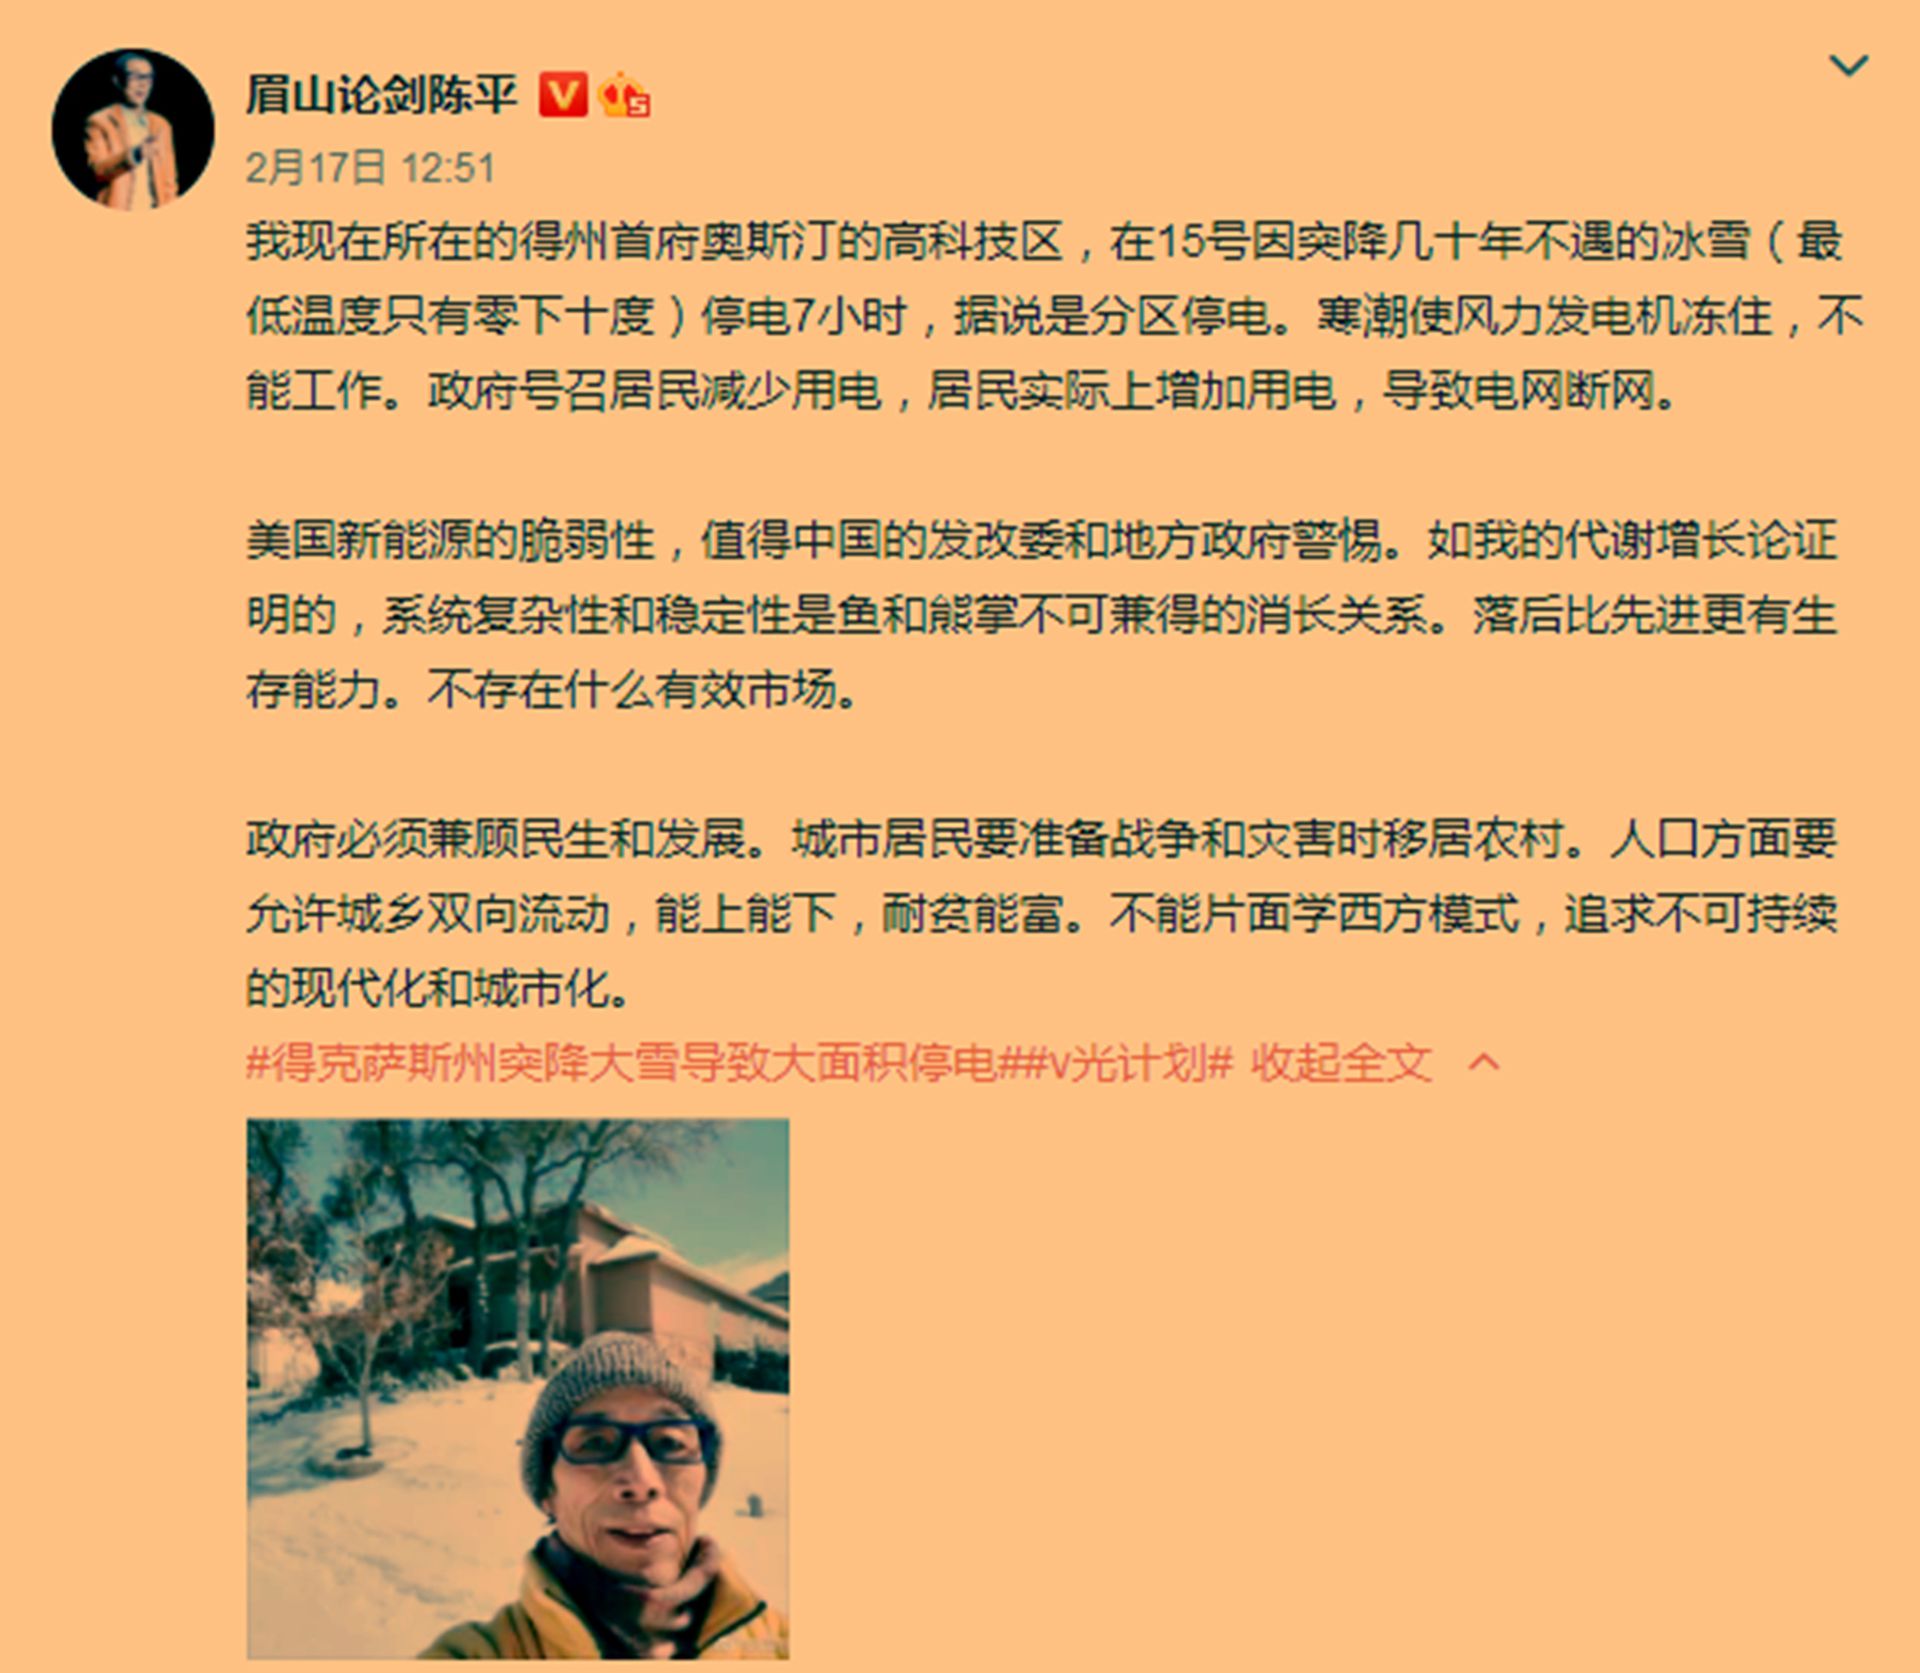 中國“反美鬥士”陳平在美豪宅被曝光 本人回應